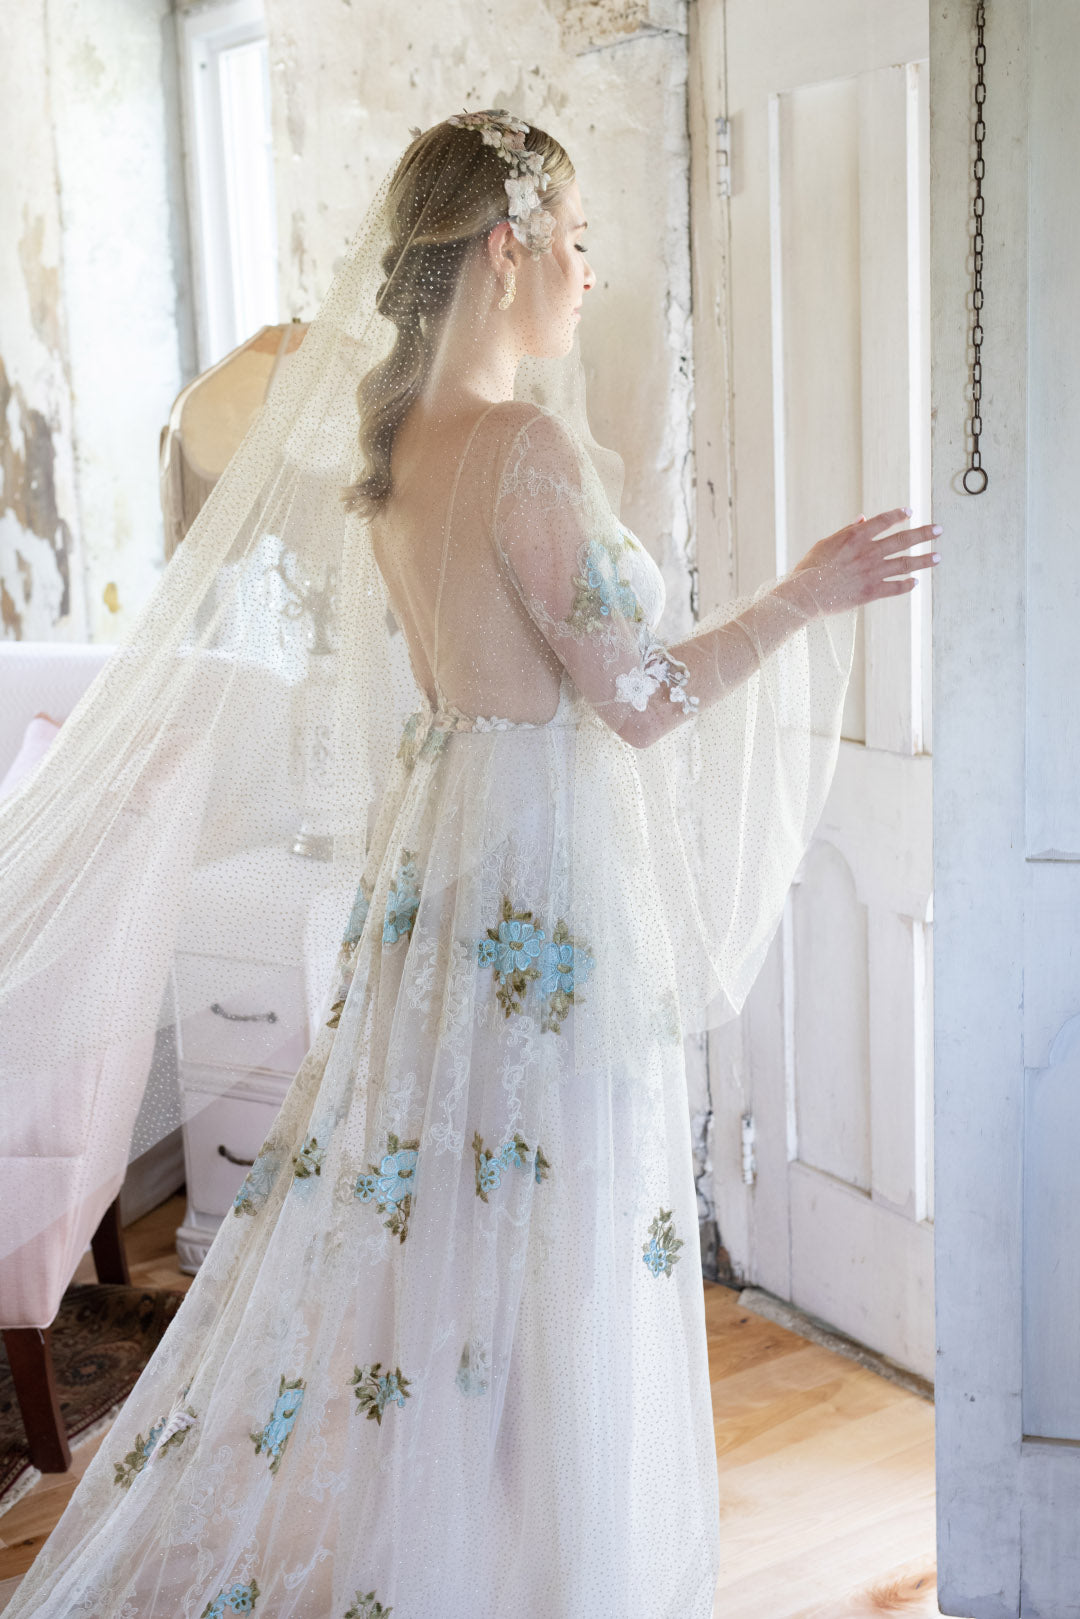 Bride wearing Chrysalis wedding dress with bell sleeves